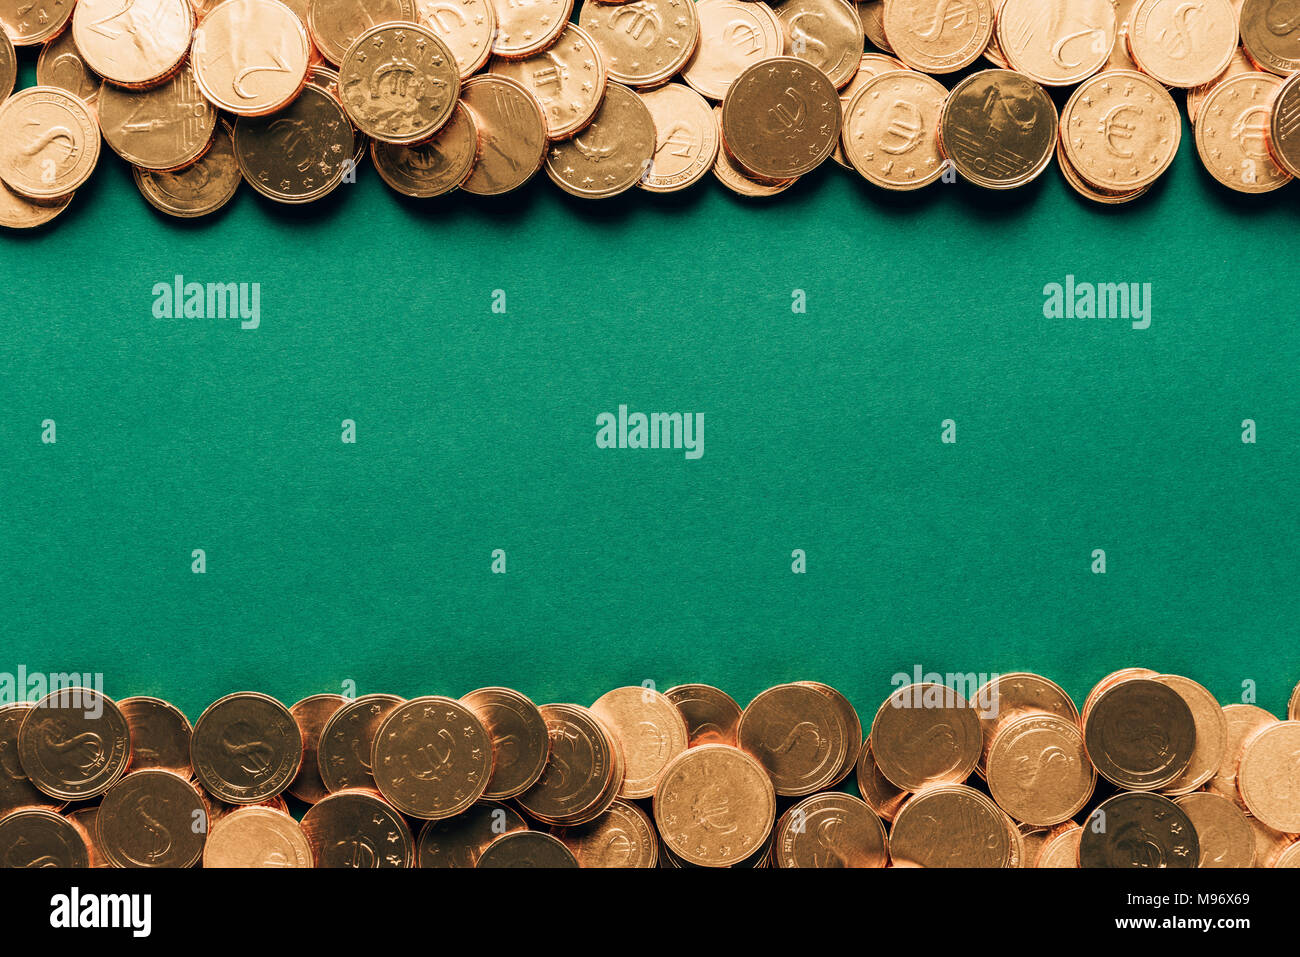 Blick von oben auf die goldenen Münzen auf grüne Oberfläche, st patricks day Konzept Stockfoto